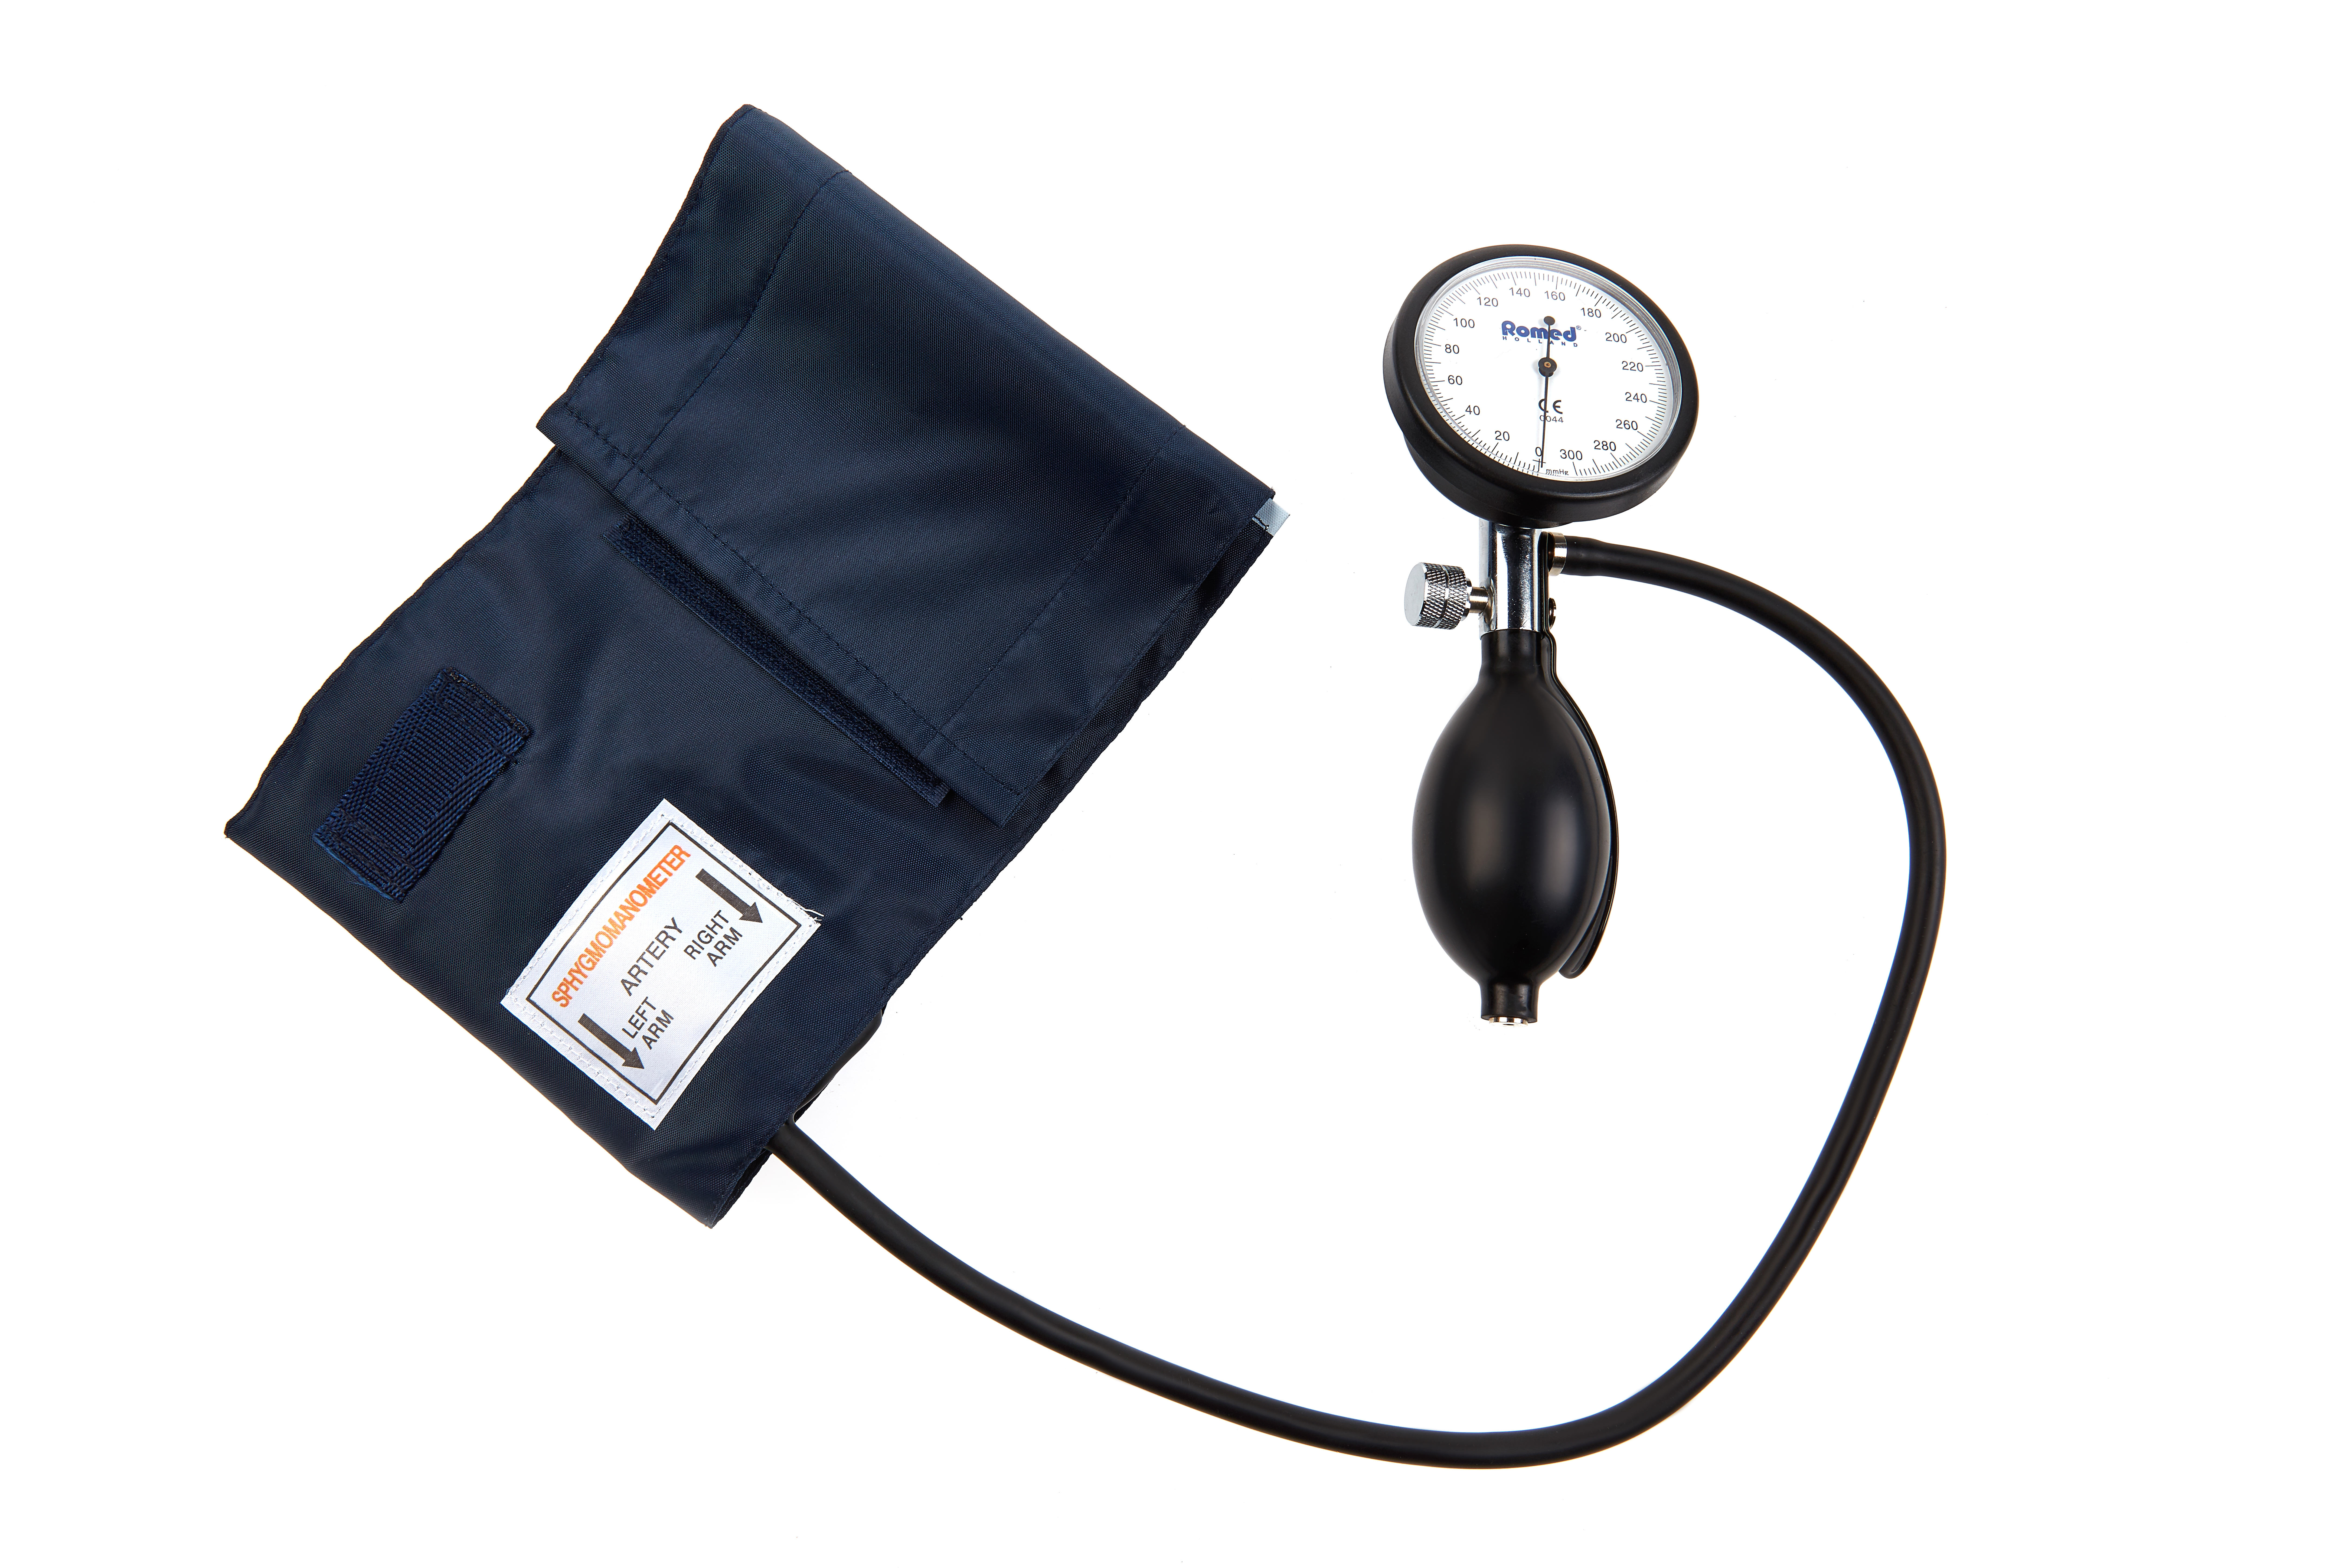 BPM-AN-50-HH Romed bloeddrukmeter aneroid, volwassen model, palm type (geïntegreerde manometer), per stuk in een binnendoosje, 50 stuks in een karton.